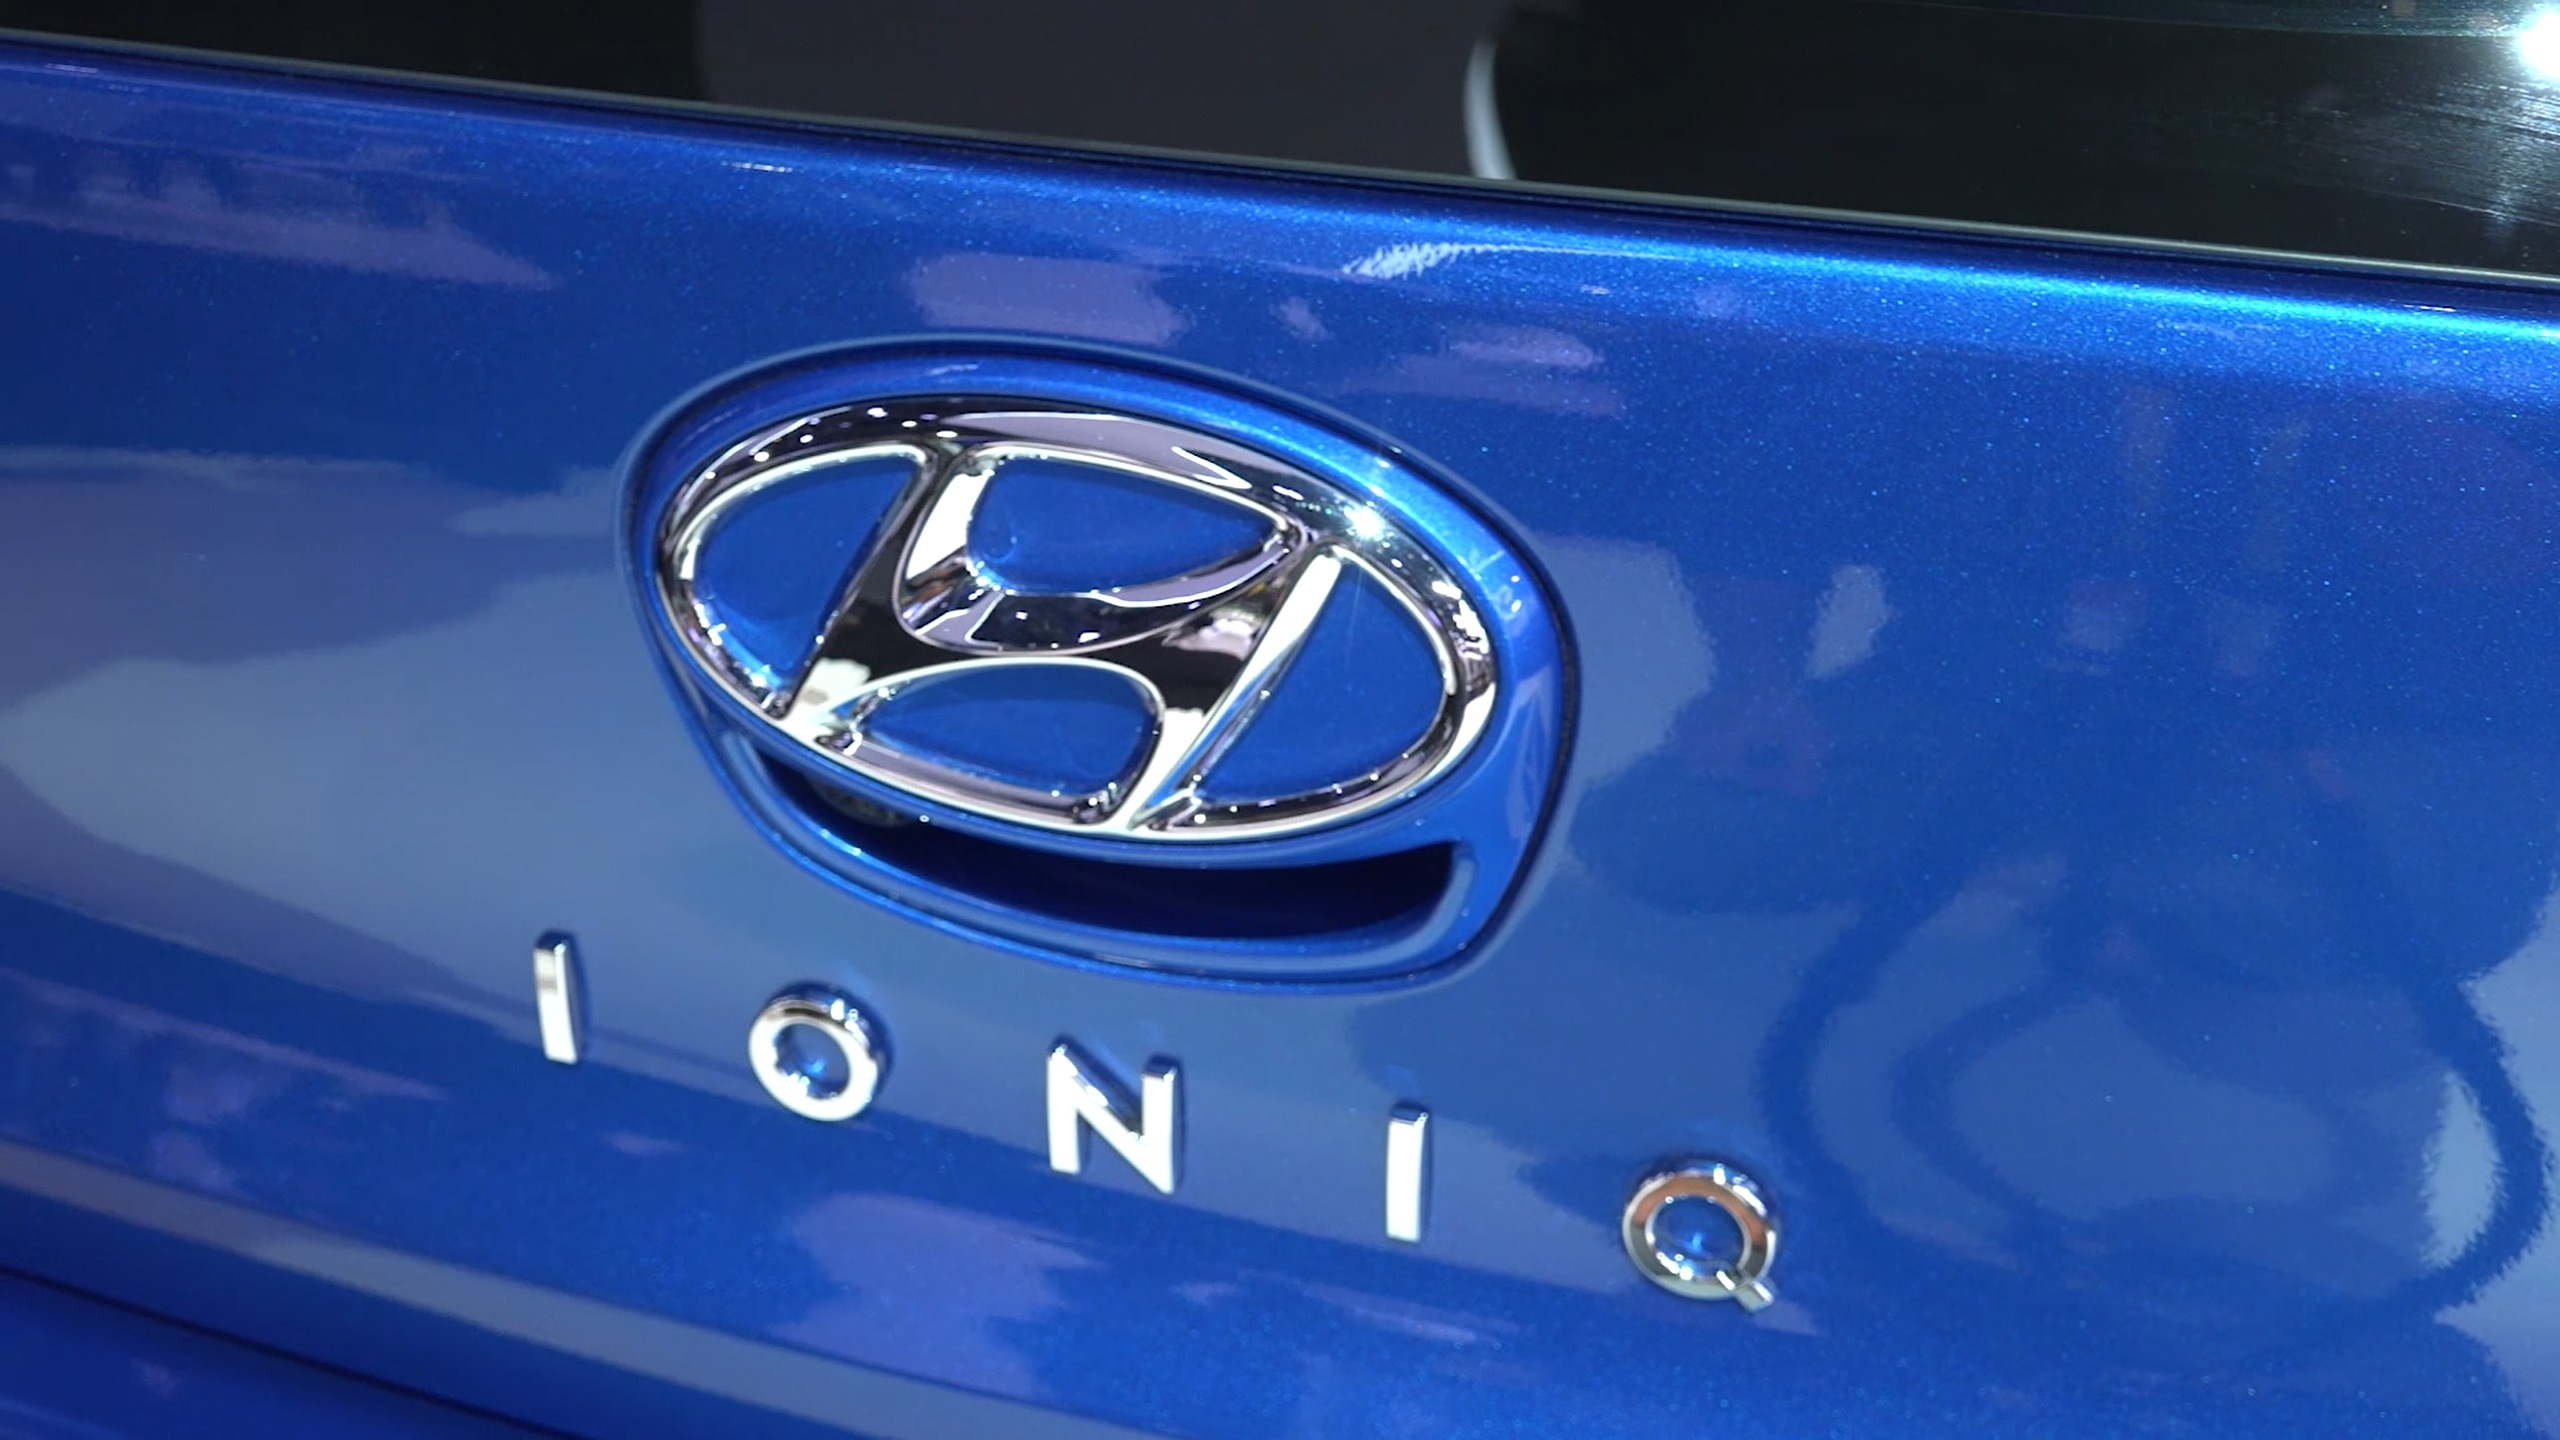 Hyundai IONIQ ön inceleme: Türkiye'ye de geliyor!